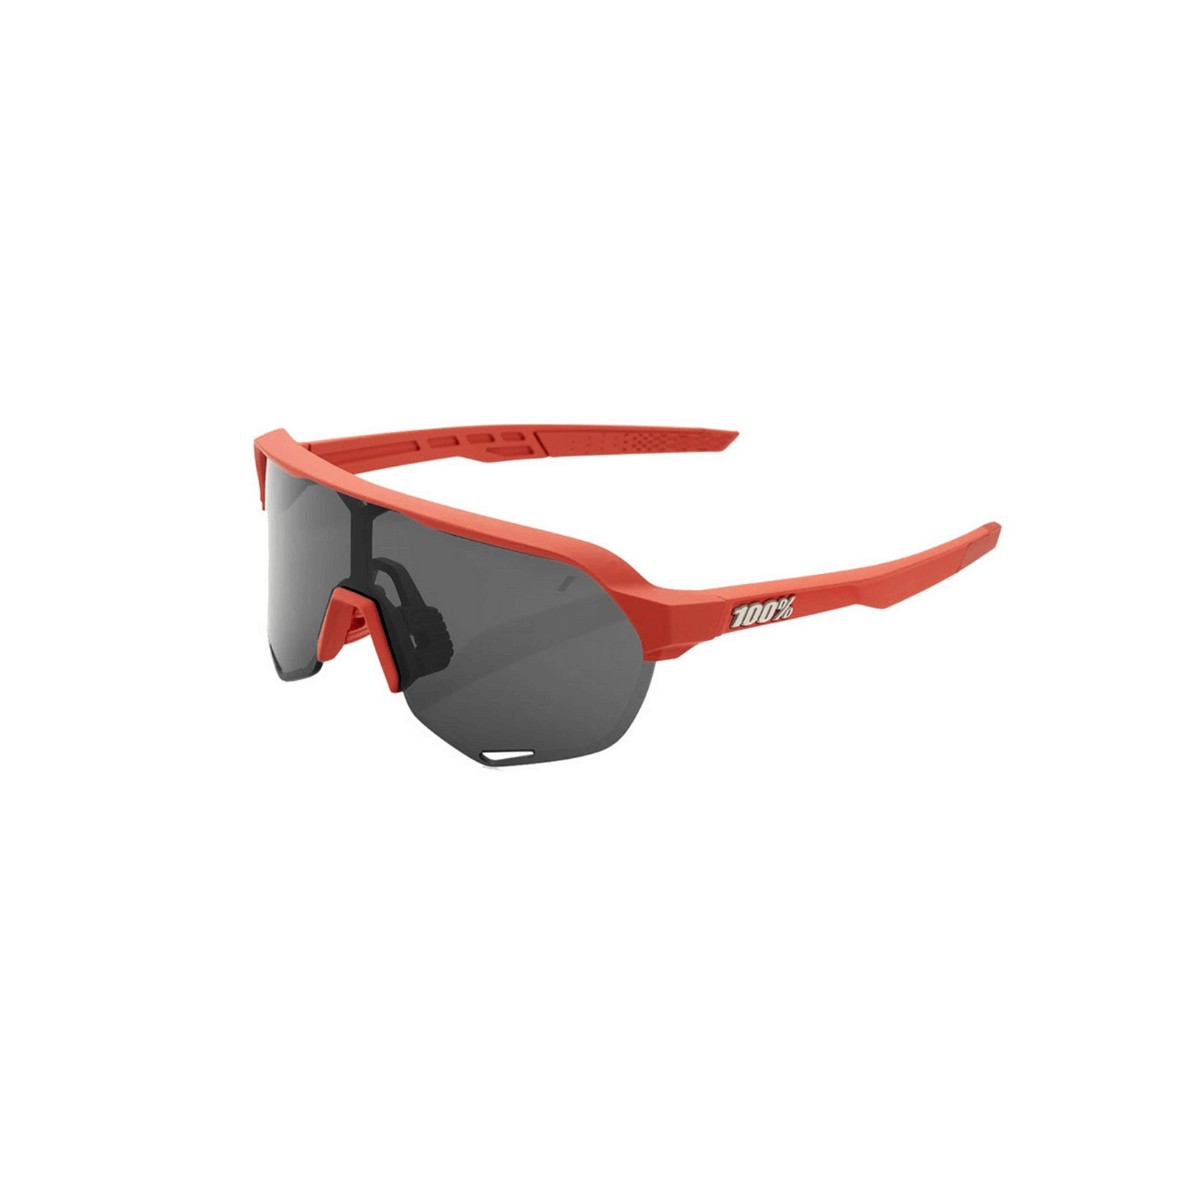 Gafas 100% S2 Soft Tact Rojo con lentes espejadas gris